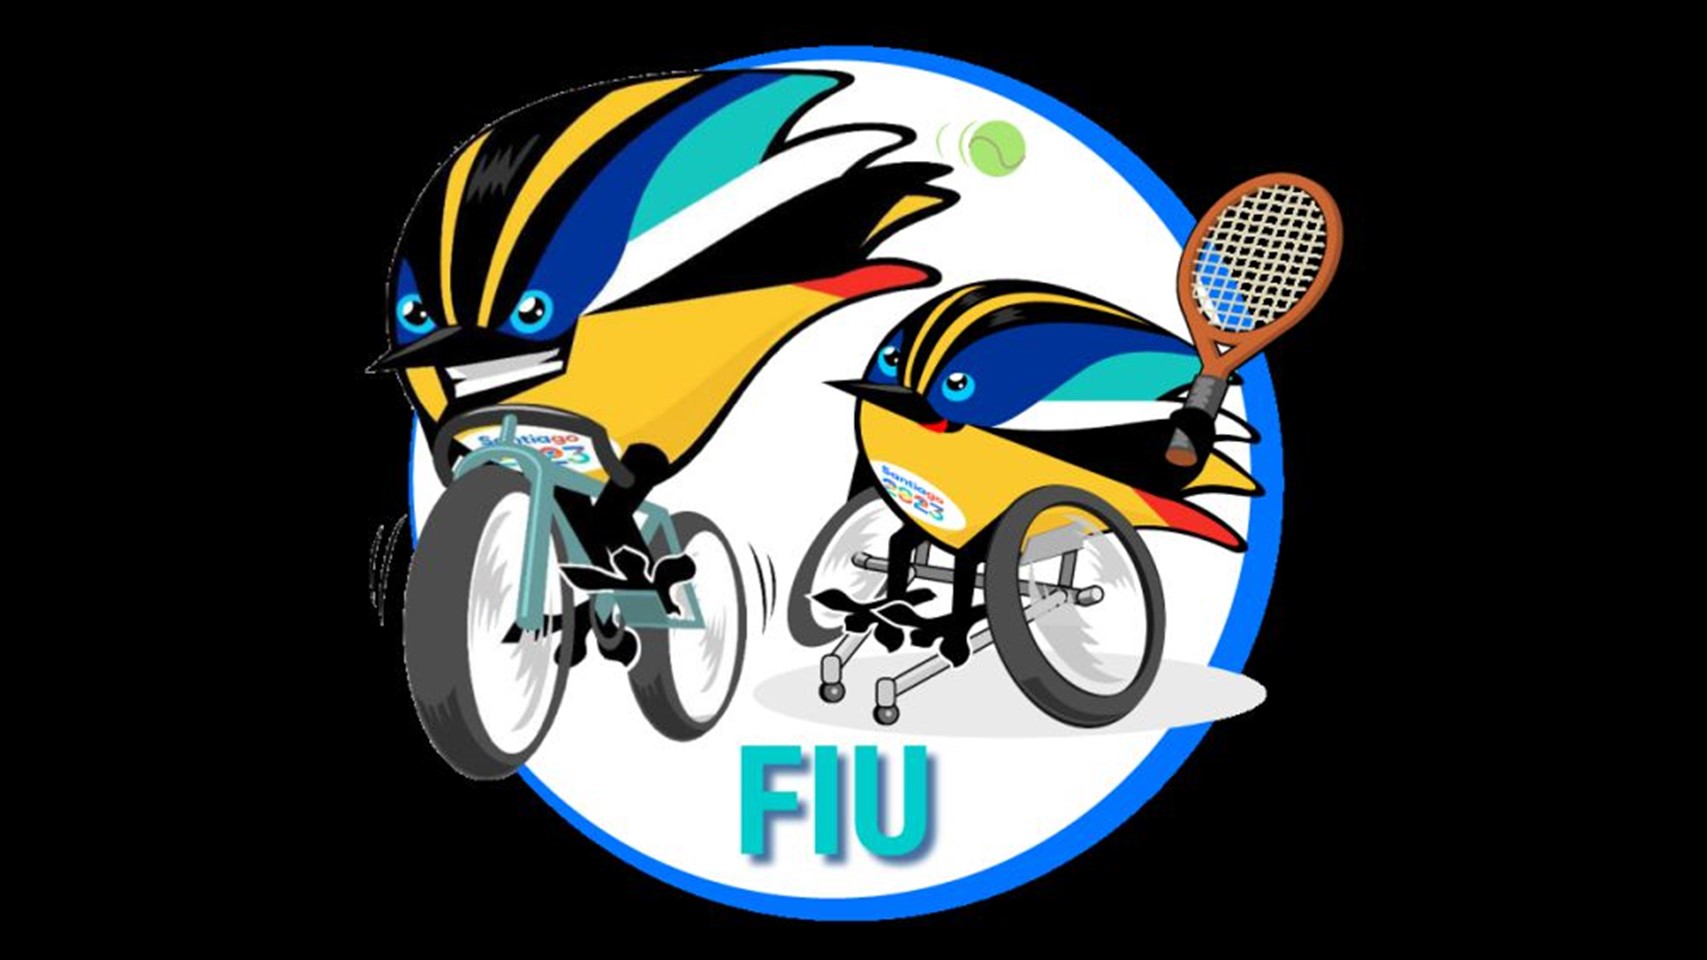  Gráfica negra con dos versiones de Fiu compitiendo: uno en bicicleta y otra tenis en silla de ruedas.